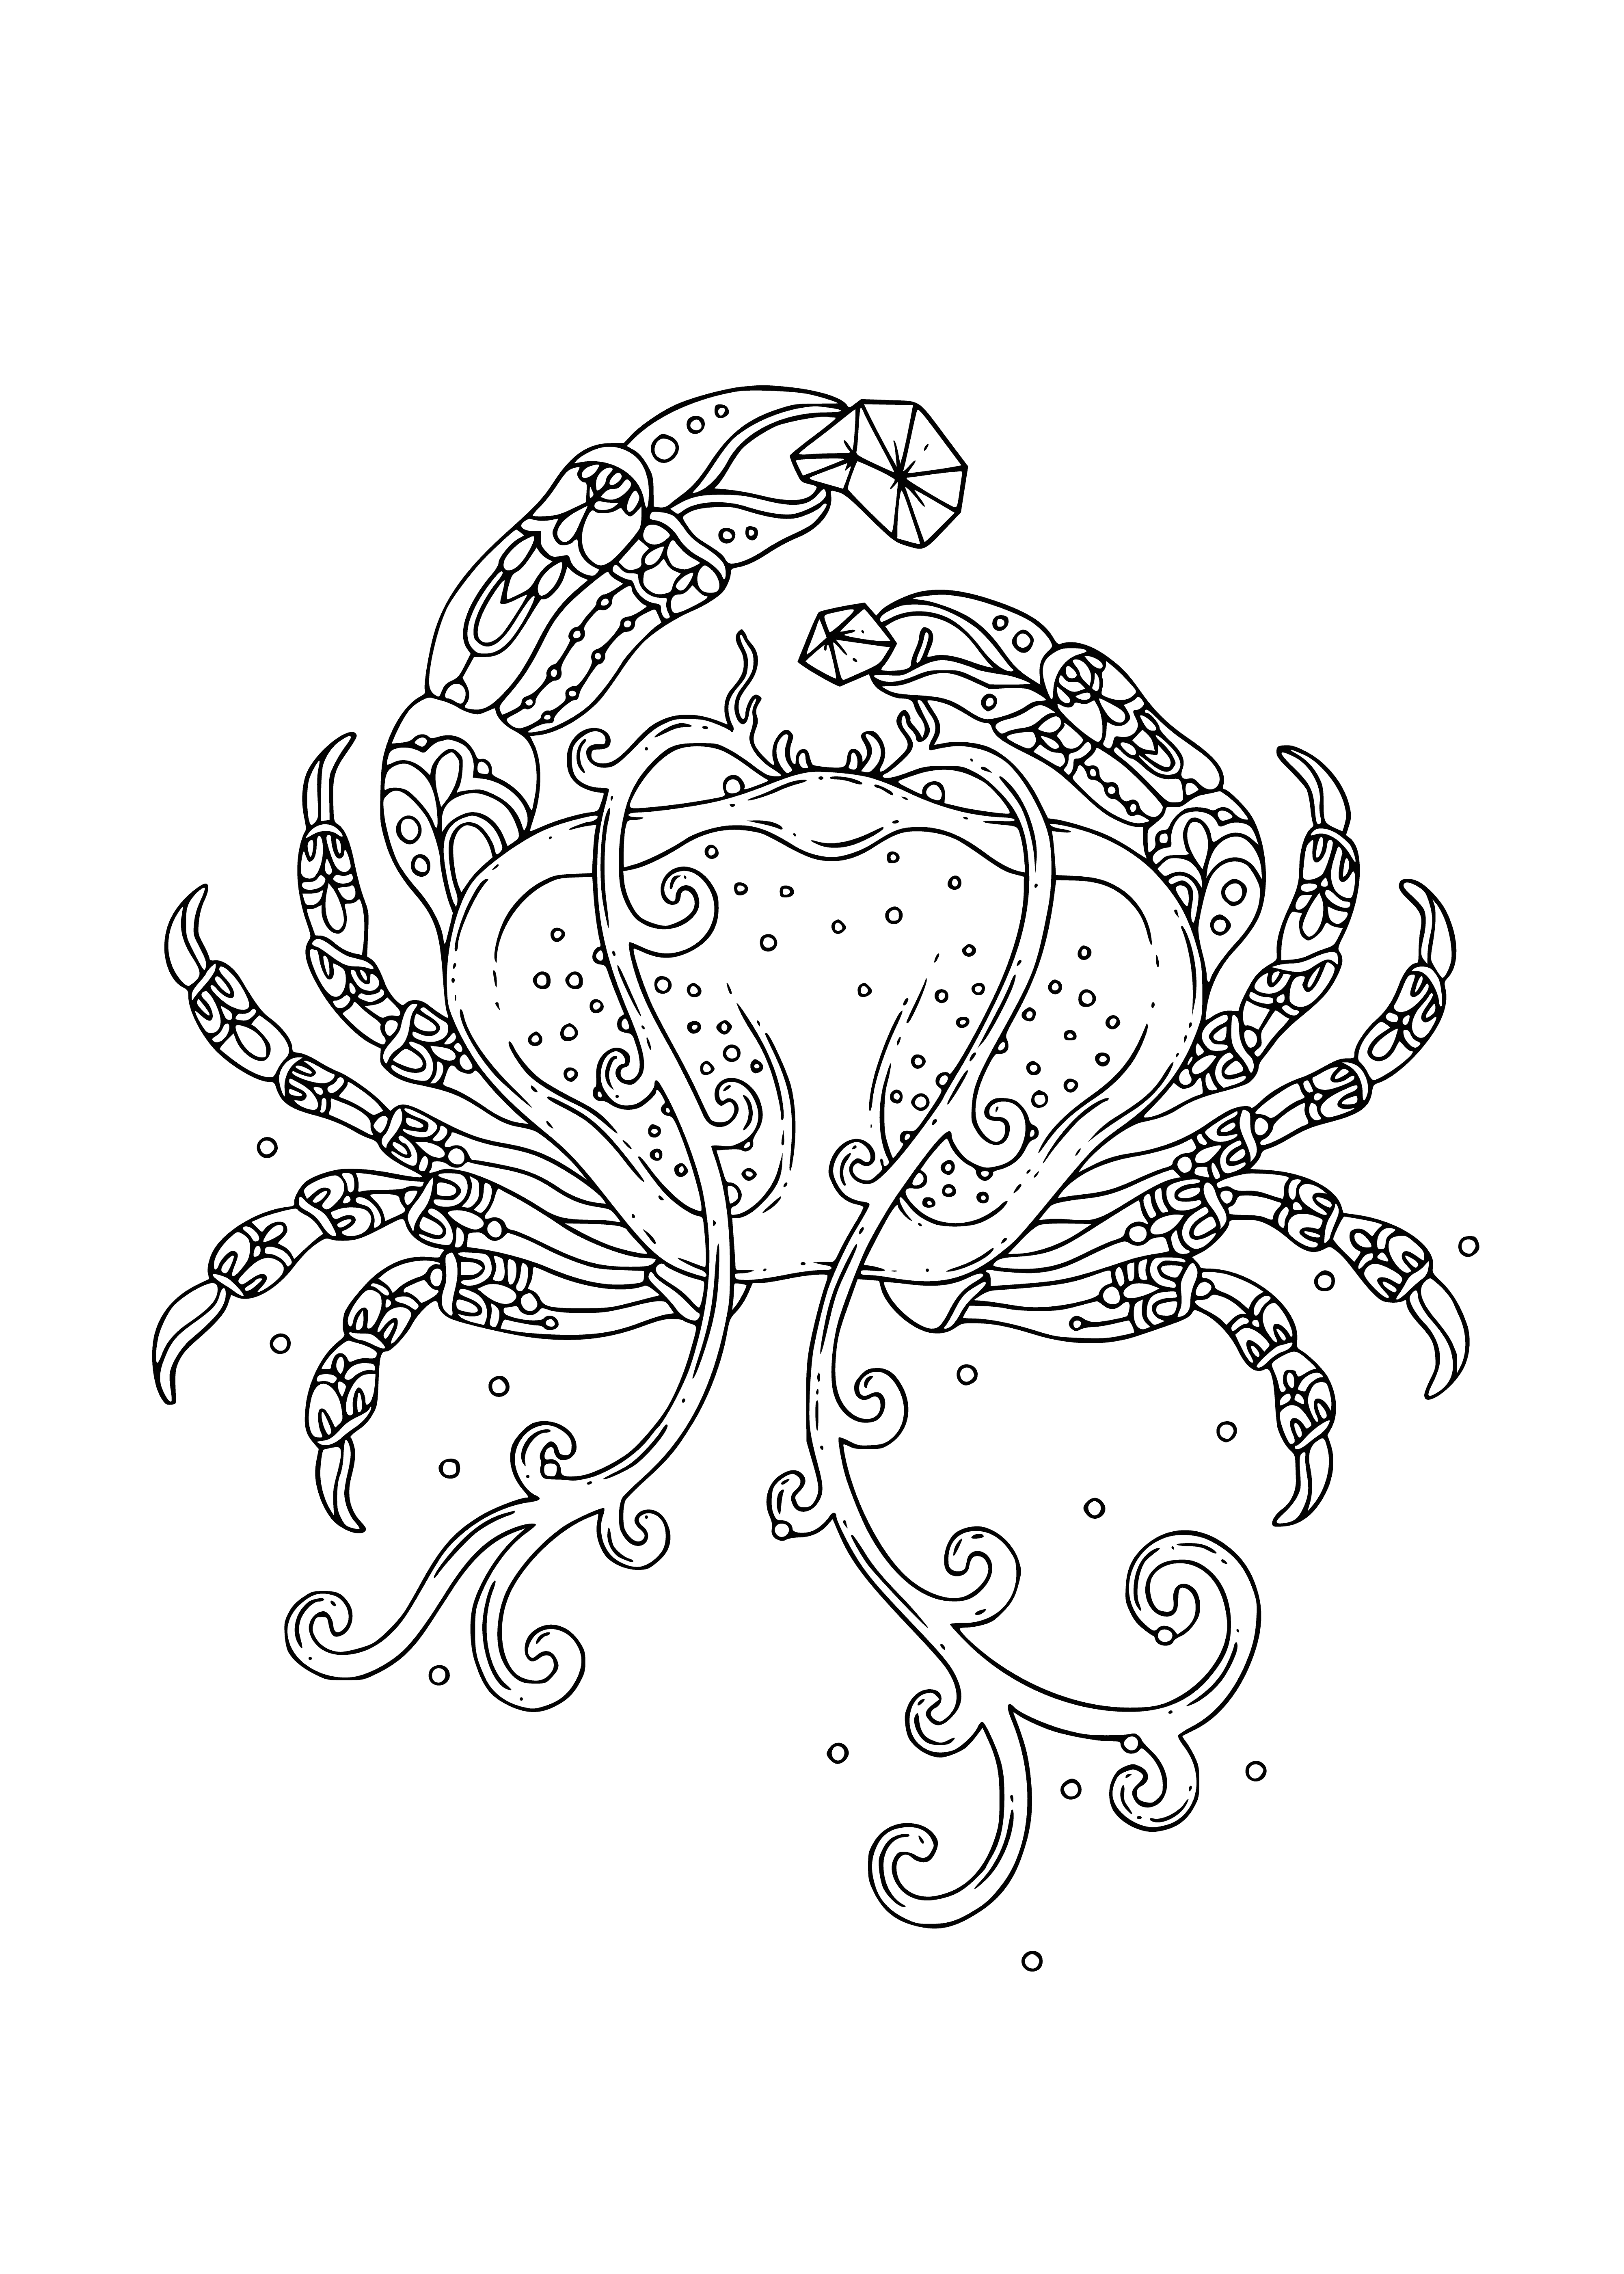 caranguejo do mar página para colorir